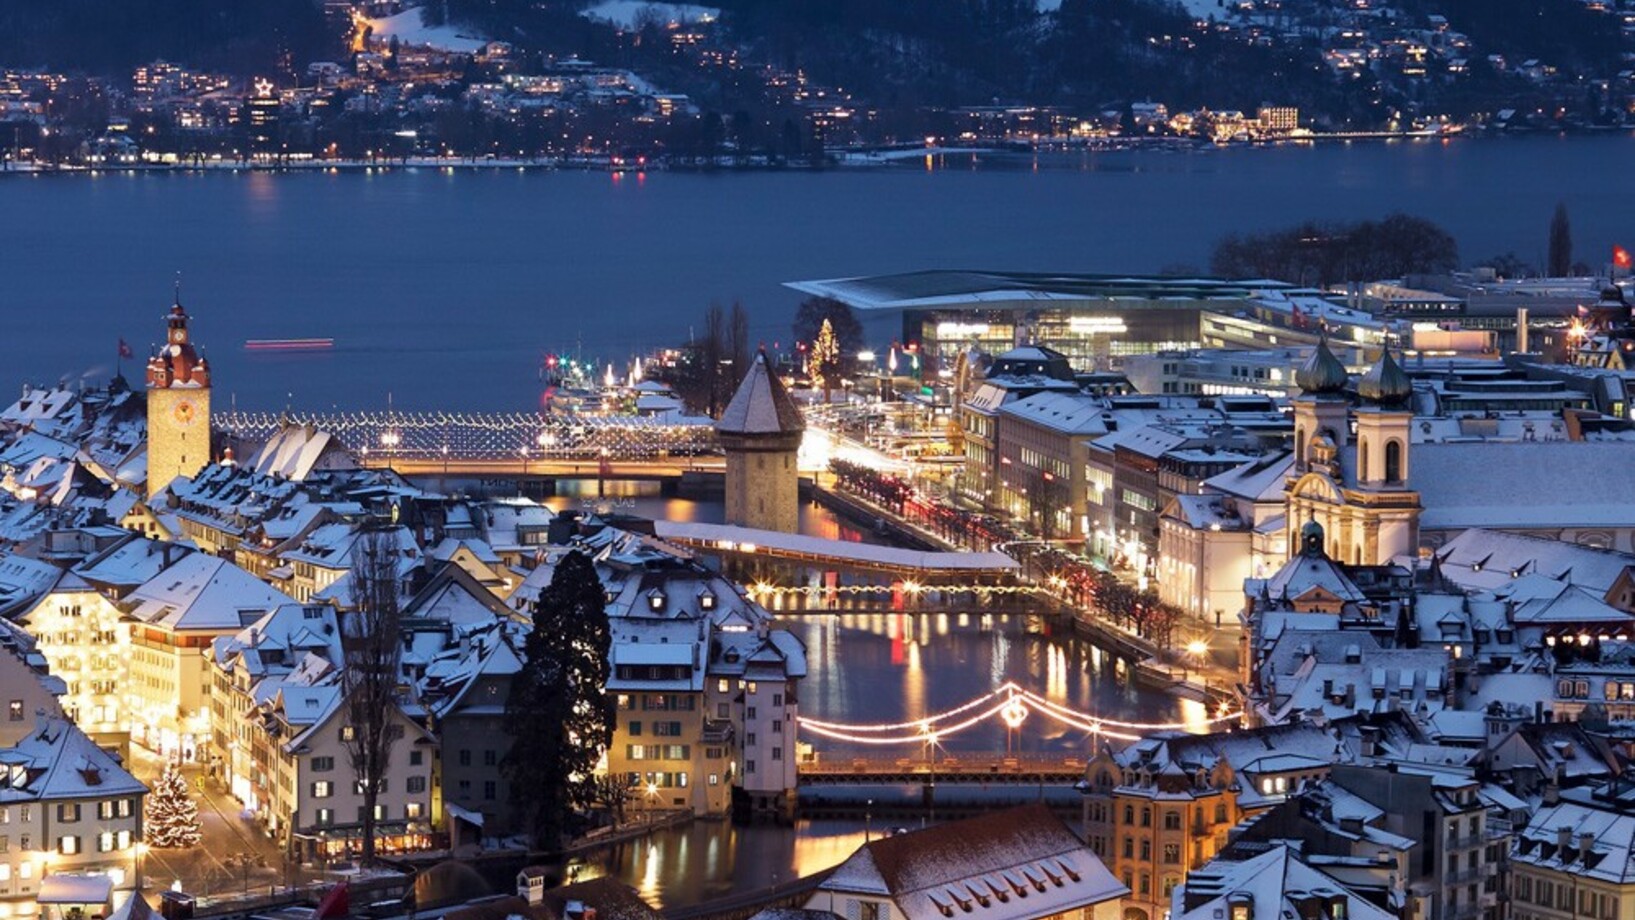 Die Dächer der Stadt Luzern in Weihnachtlicher Beleuchtung mit schneebedeckten Dächern. In der Mitte durchdringt die Reuss die Stadt, im Hintergrund der Vierwaldstädtersee